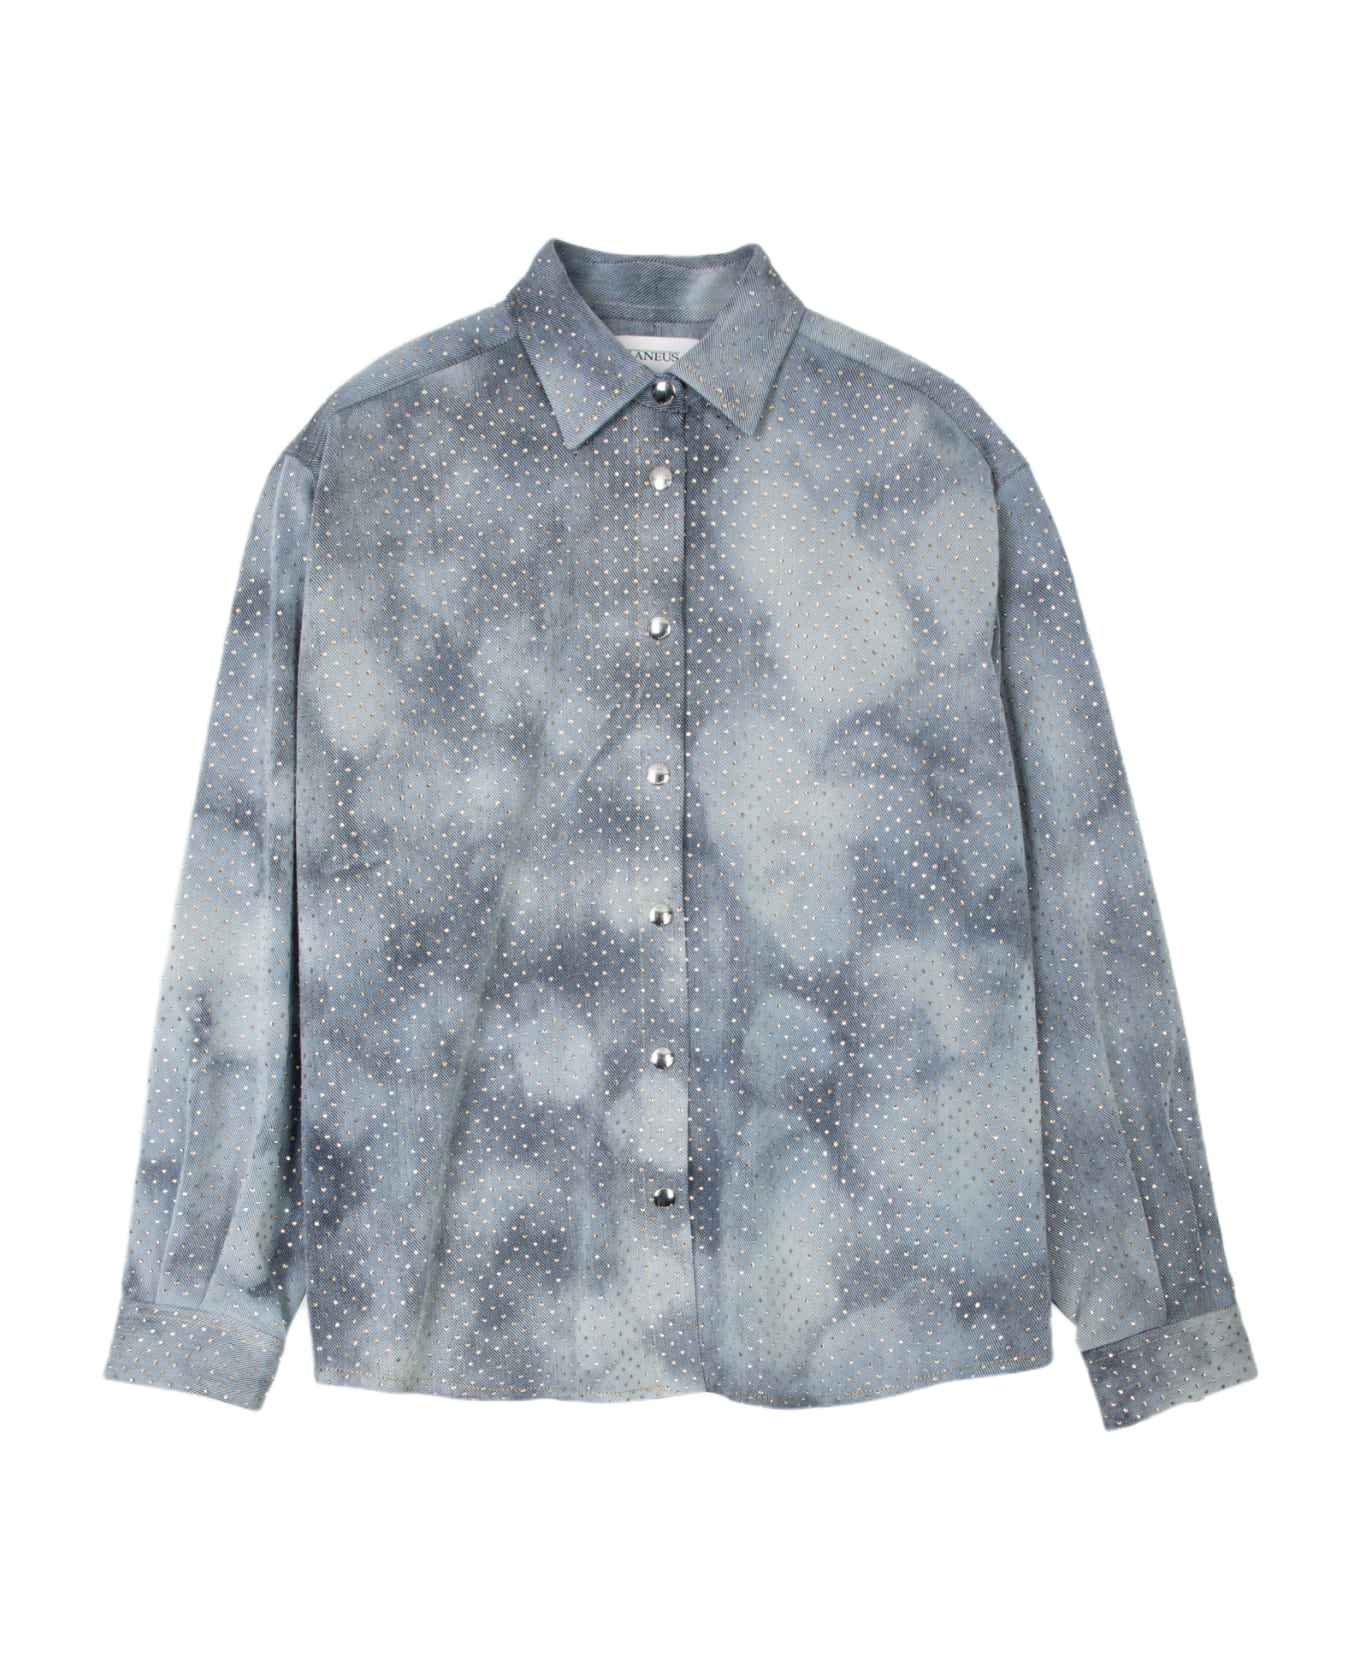 Laneus Denim Strass Shirt Woman Light blue denim shirt with crystals - Denim Strass Shirt - Denim chiaro